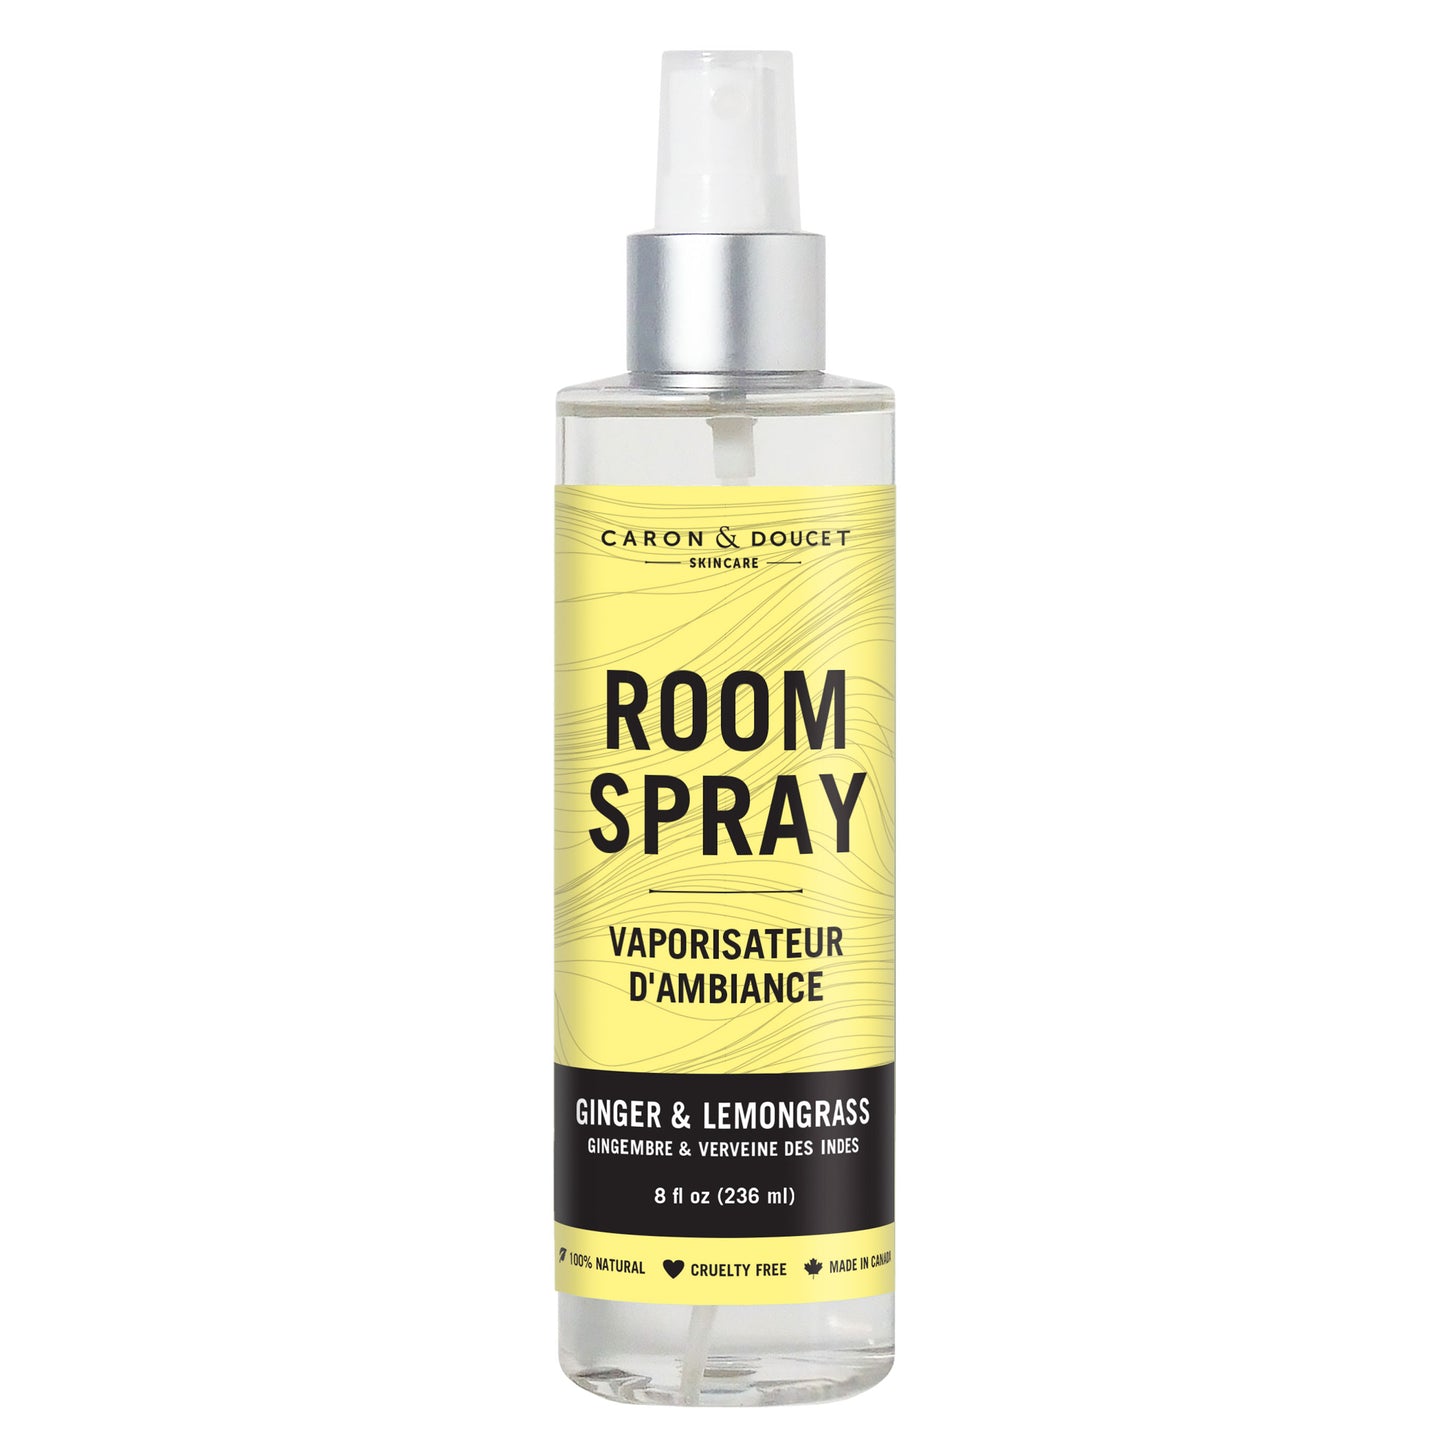 Ginger & Lemongrass Room Spray, 8oz